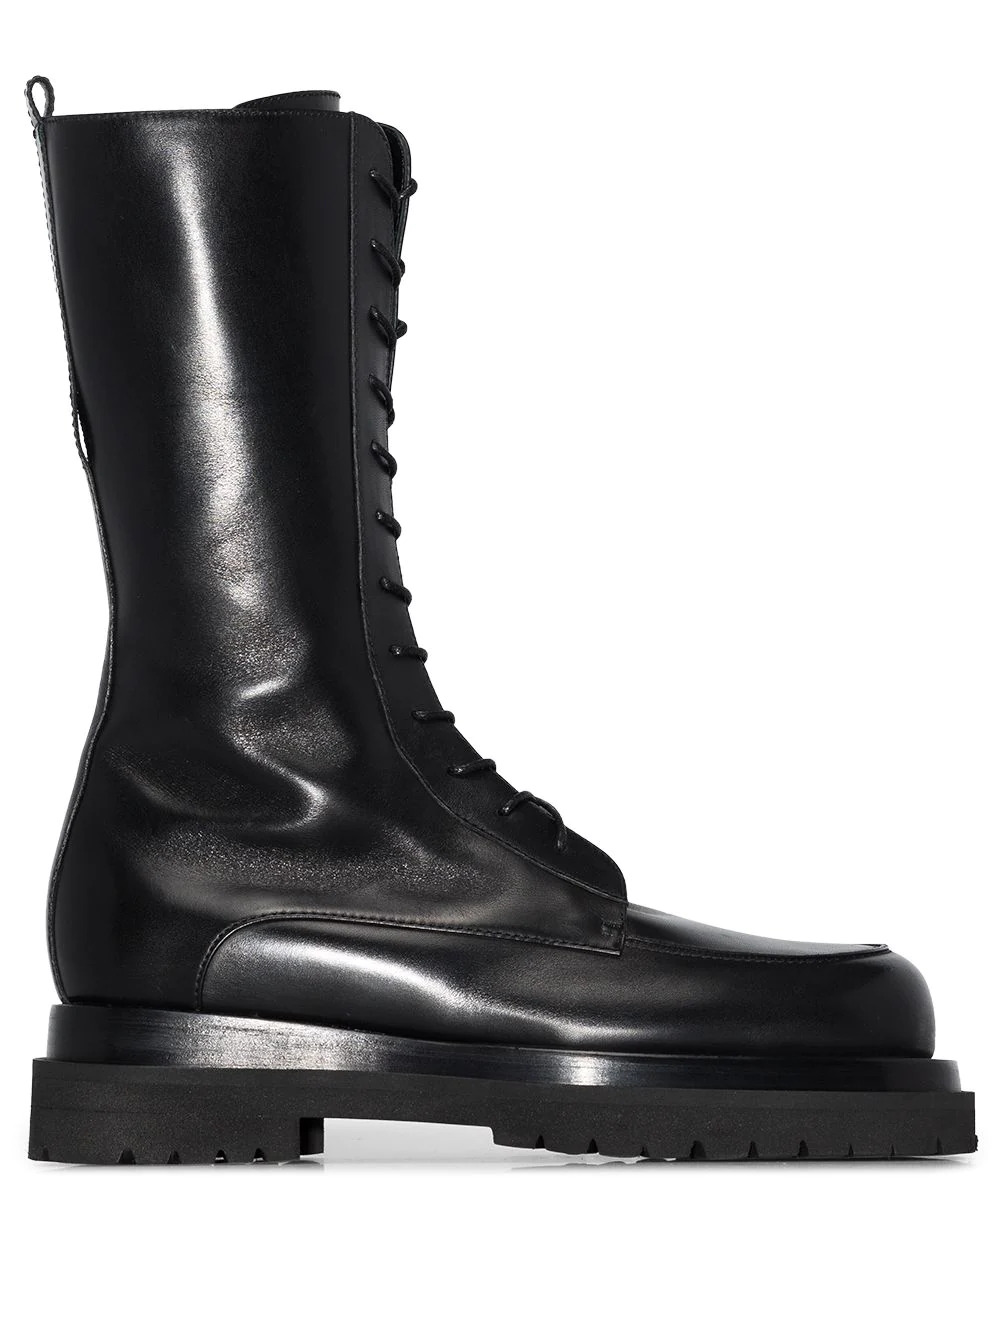 Lace-up combat boots